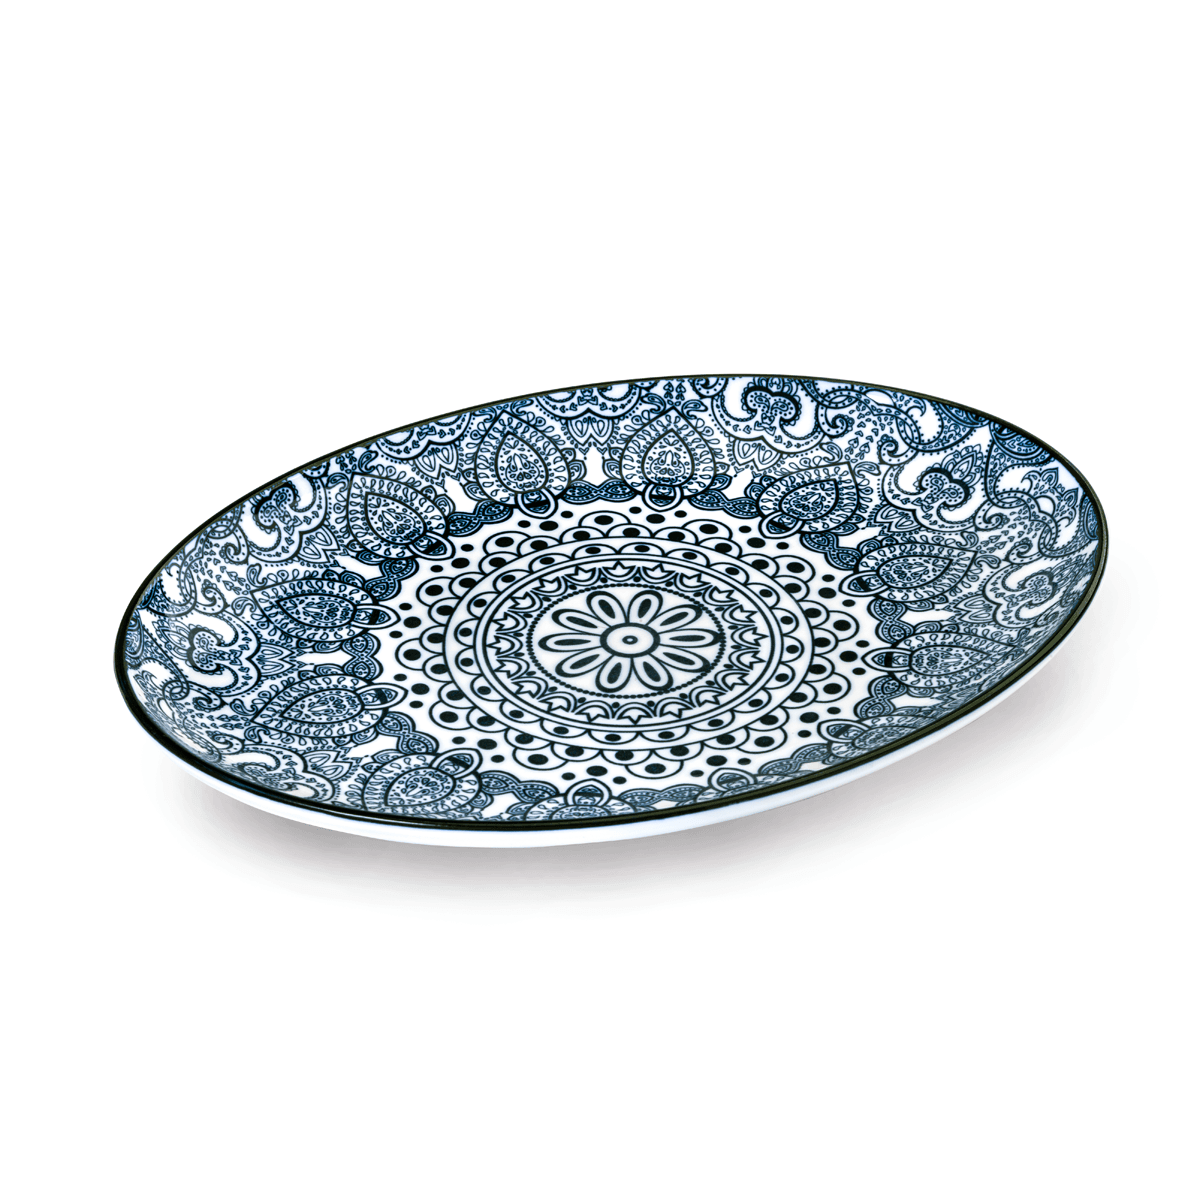 صحن تقديم بيضوي بورسلان 25.4 سم أزرق شي بروشي Che Brucia Arabesque Oval Plate